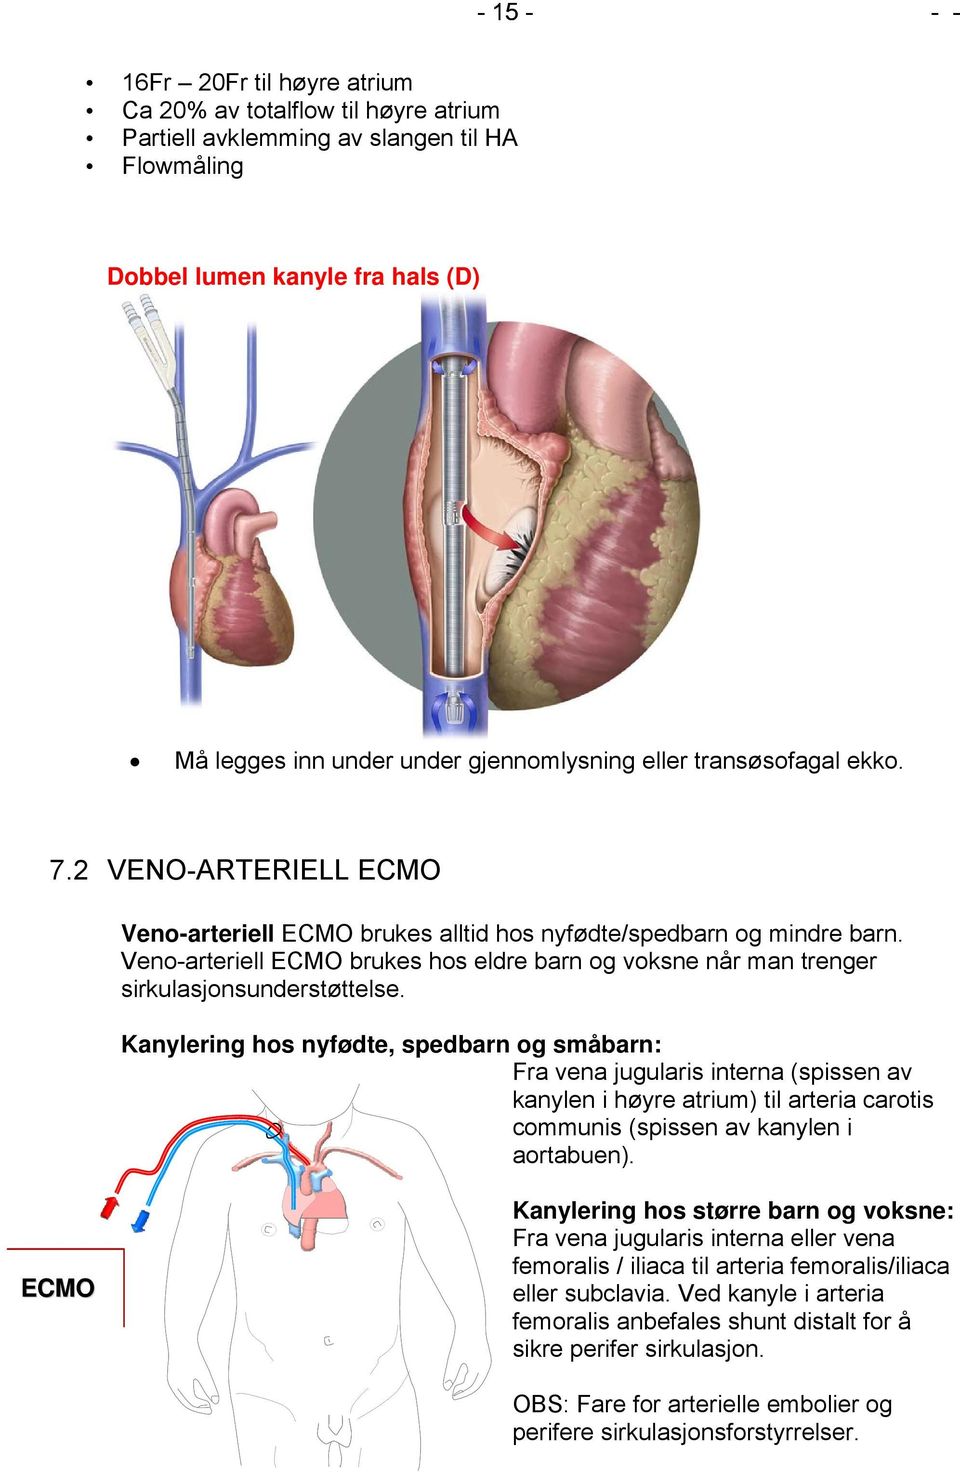 Veno-arteriell ECMO brukes hos eldre barn og voksne når man trenger sirkulasjonsunderstøttelse.